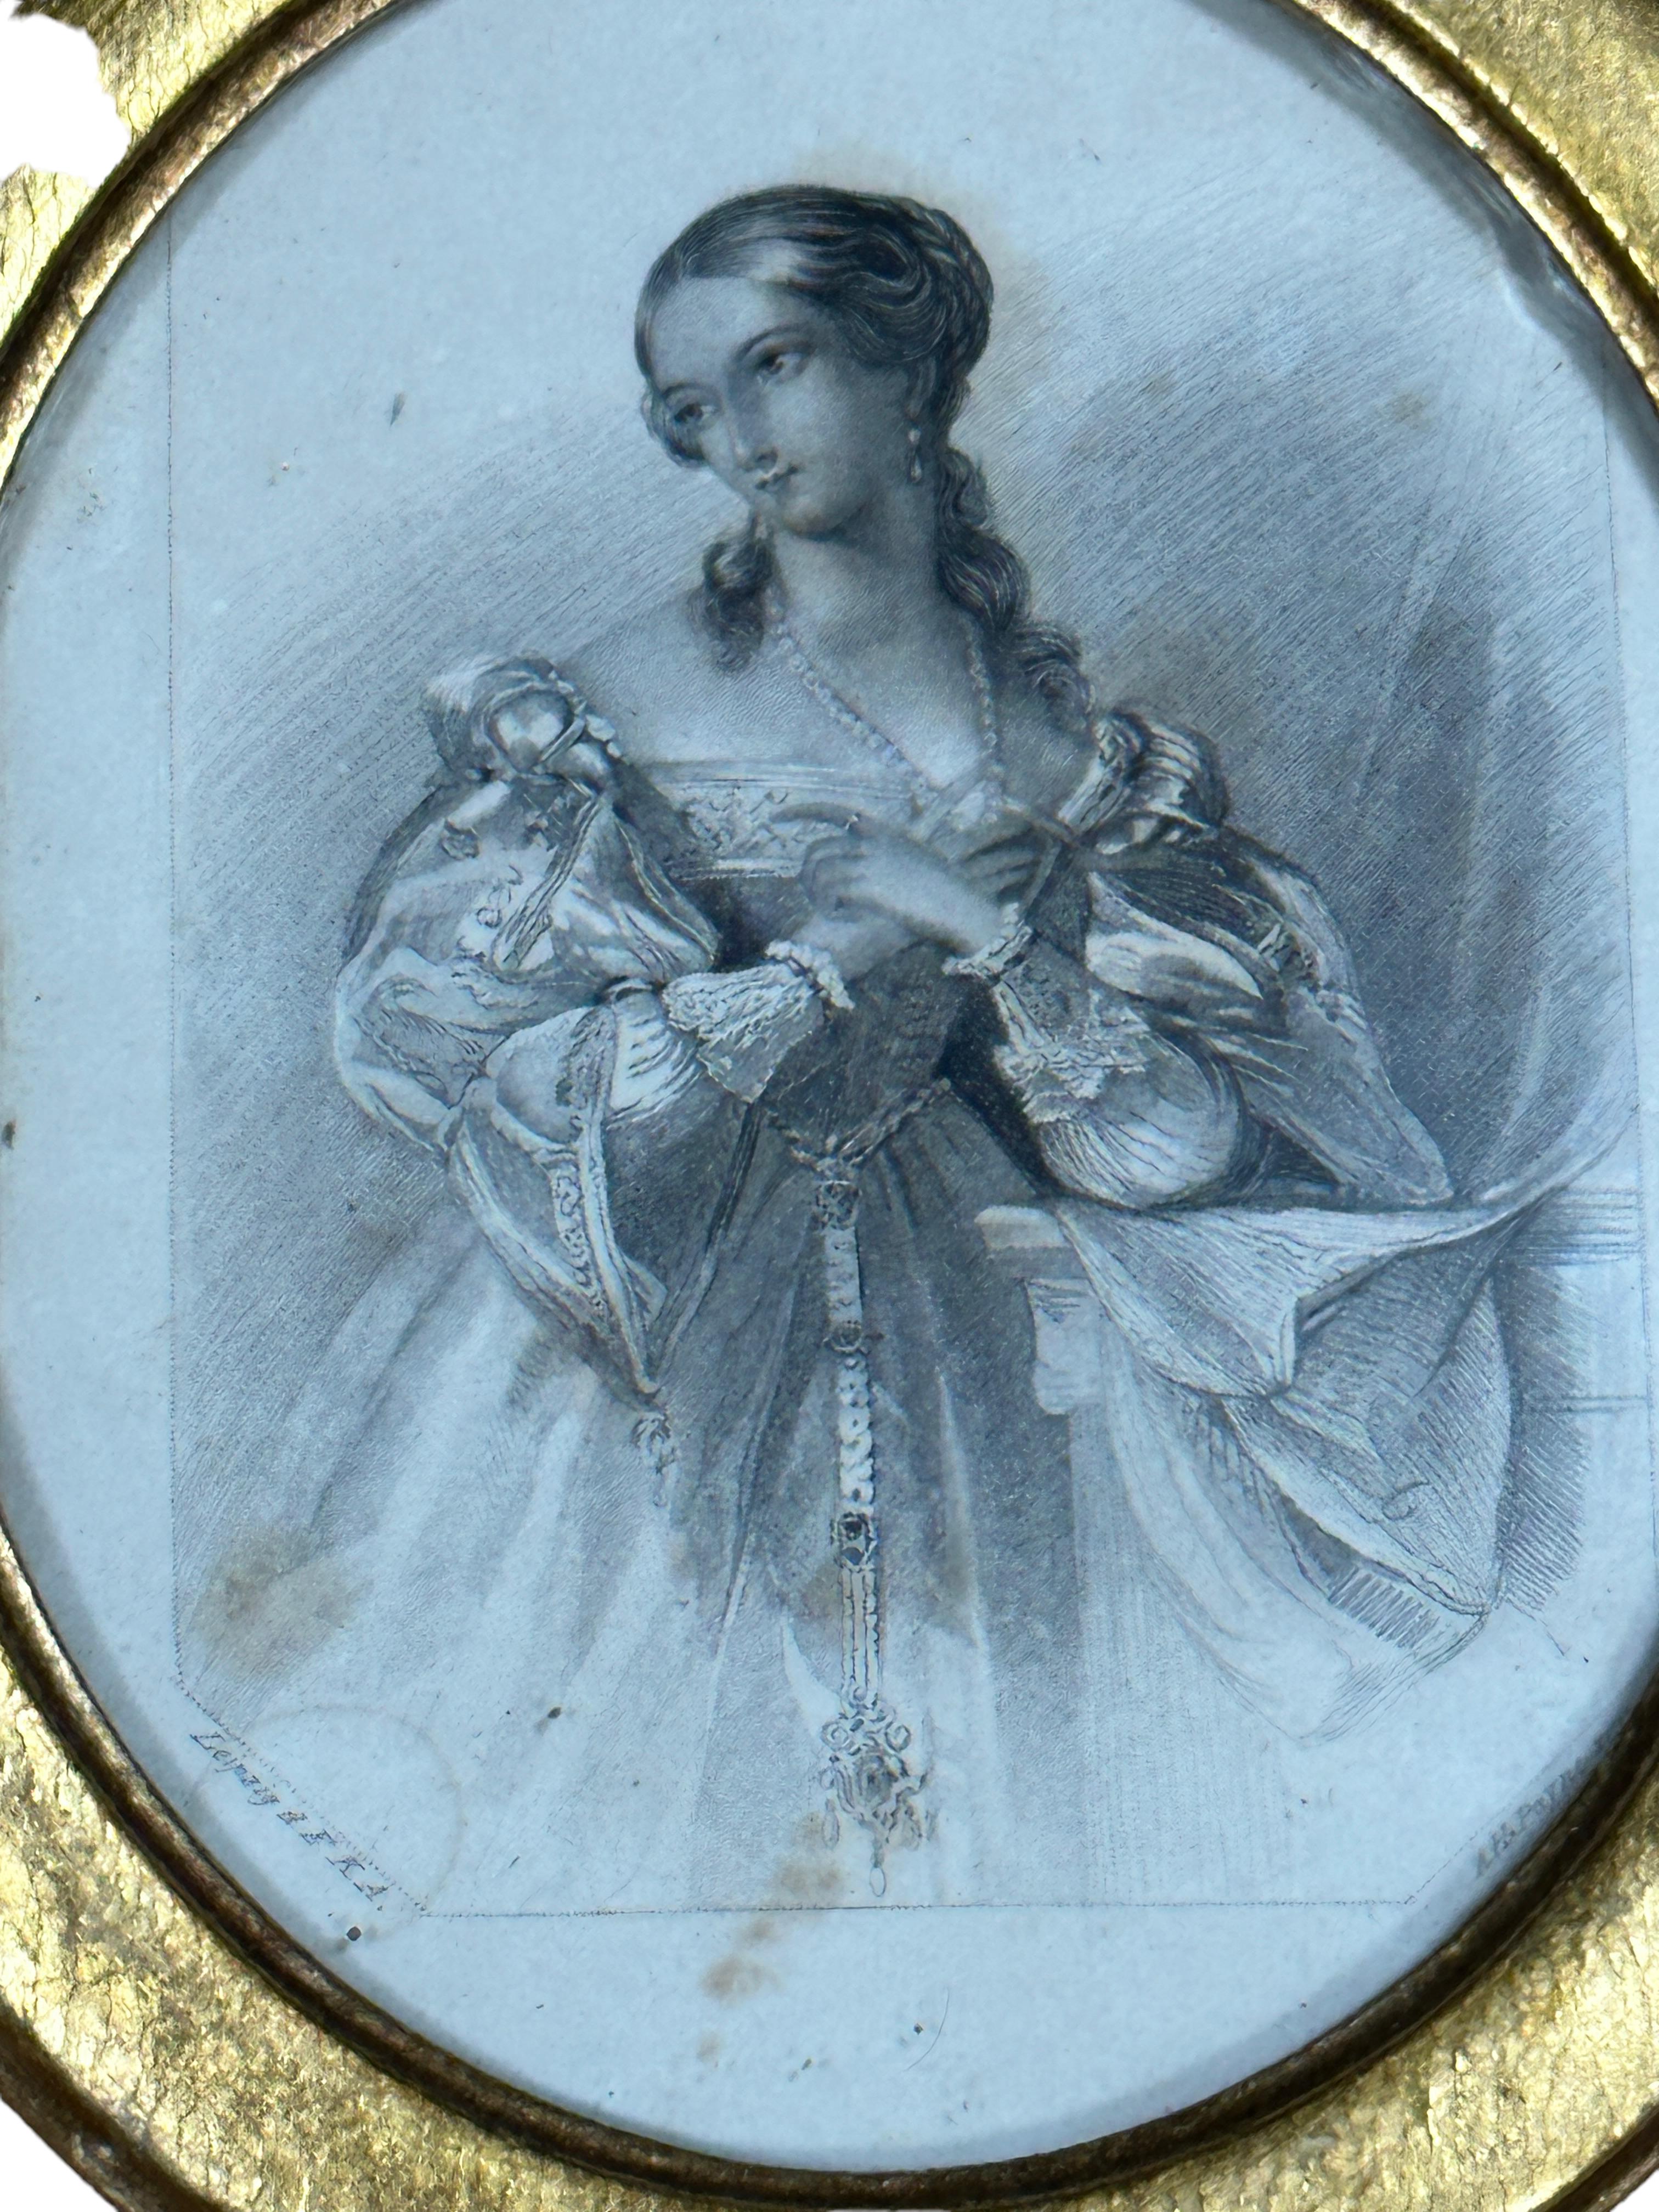 Eine außergewöhnliche Original-Lithographie der Dame. Signiert vom Künstler.
Schöner handgefertigter vergoldeter Biedermeier-Rahmen. Wir glauben, dass es aus den 1860er Jahren stammt.  Die sichtbare Bildgröße ist ca. 4,38